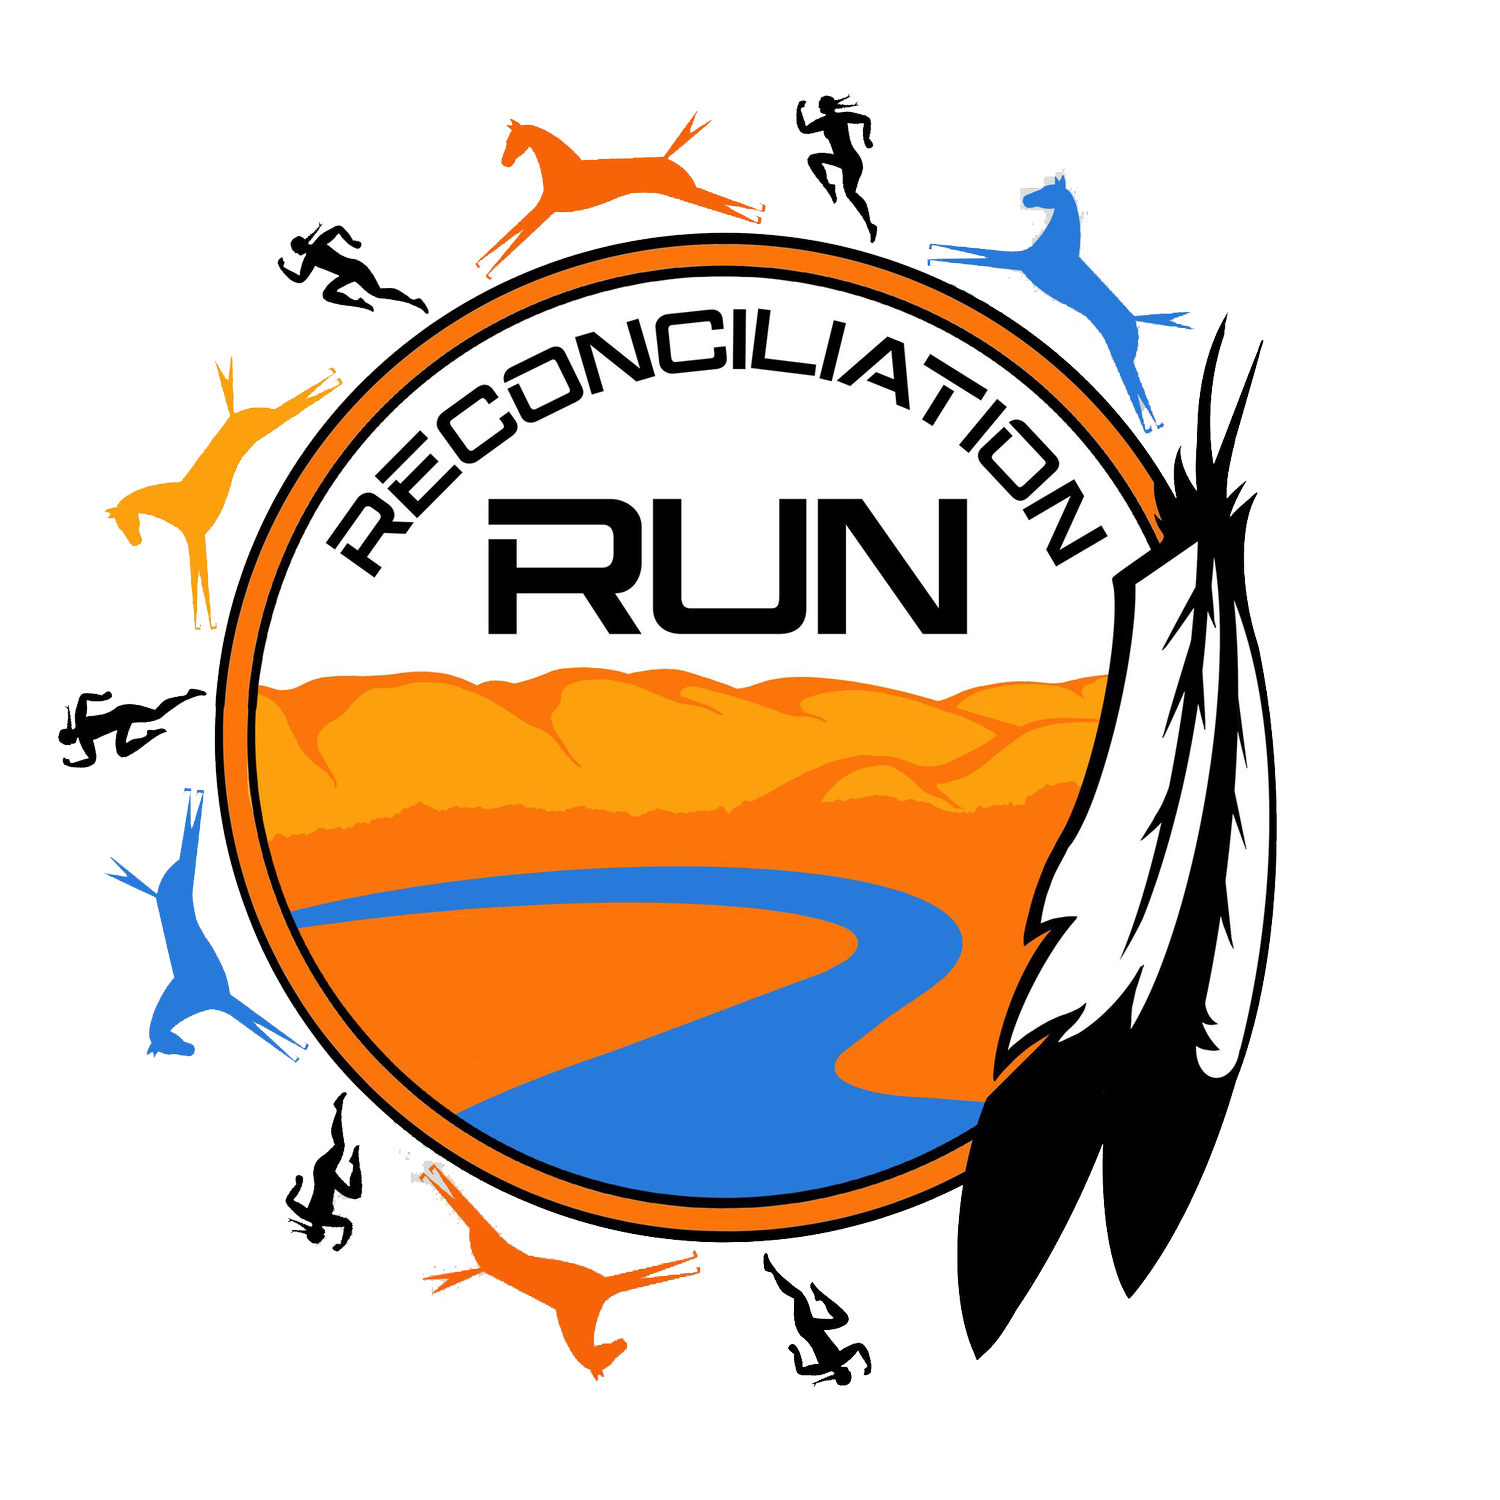 Reconciliation Run